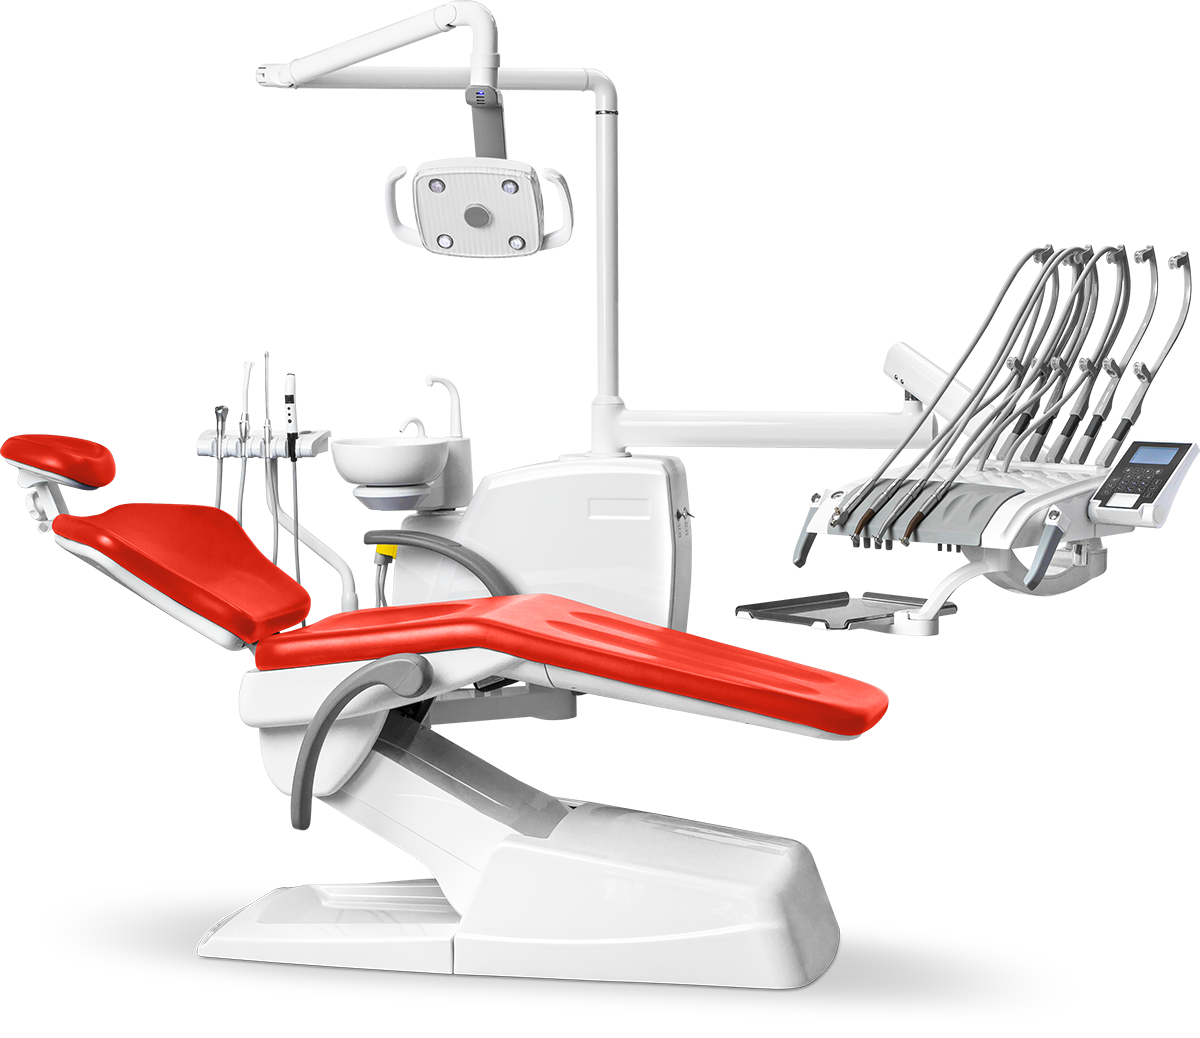  Стоматологическая установка Mercury 330 стандарт верхняя подача, Красный